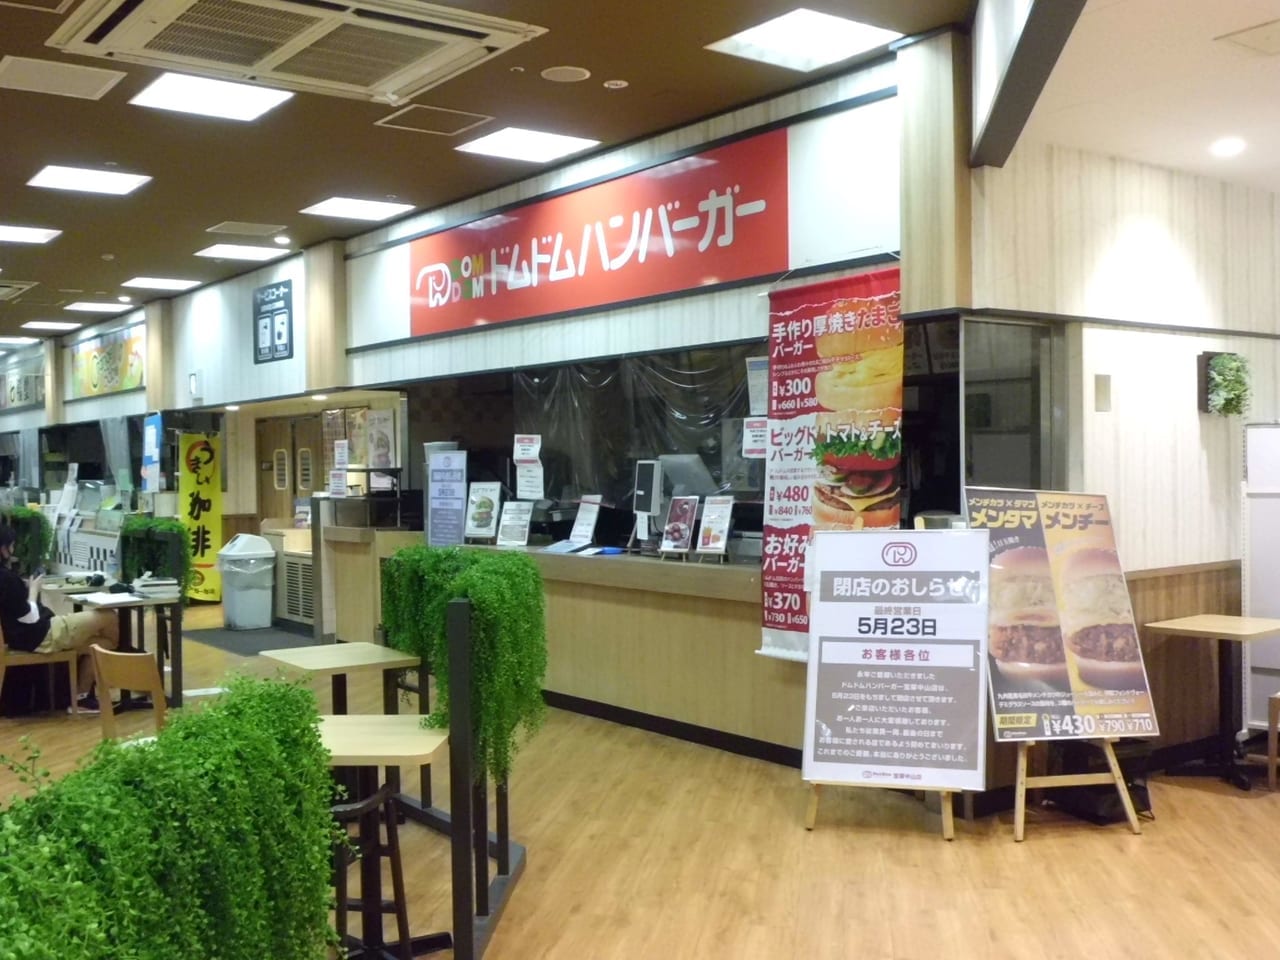 ドムドムハンバーガー宝塚中山店は5月23日に閉店です